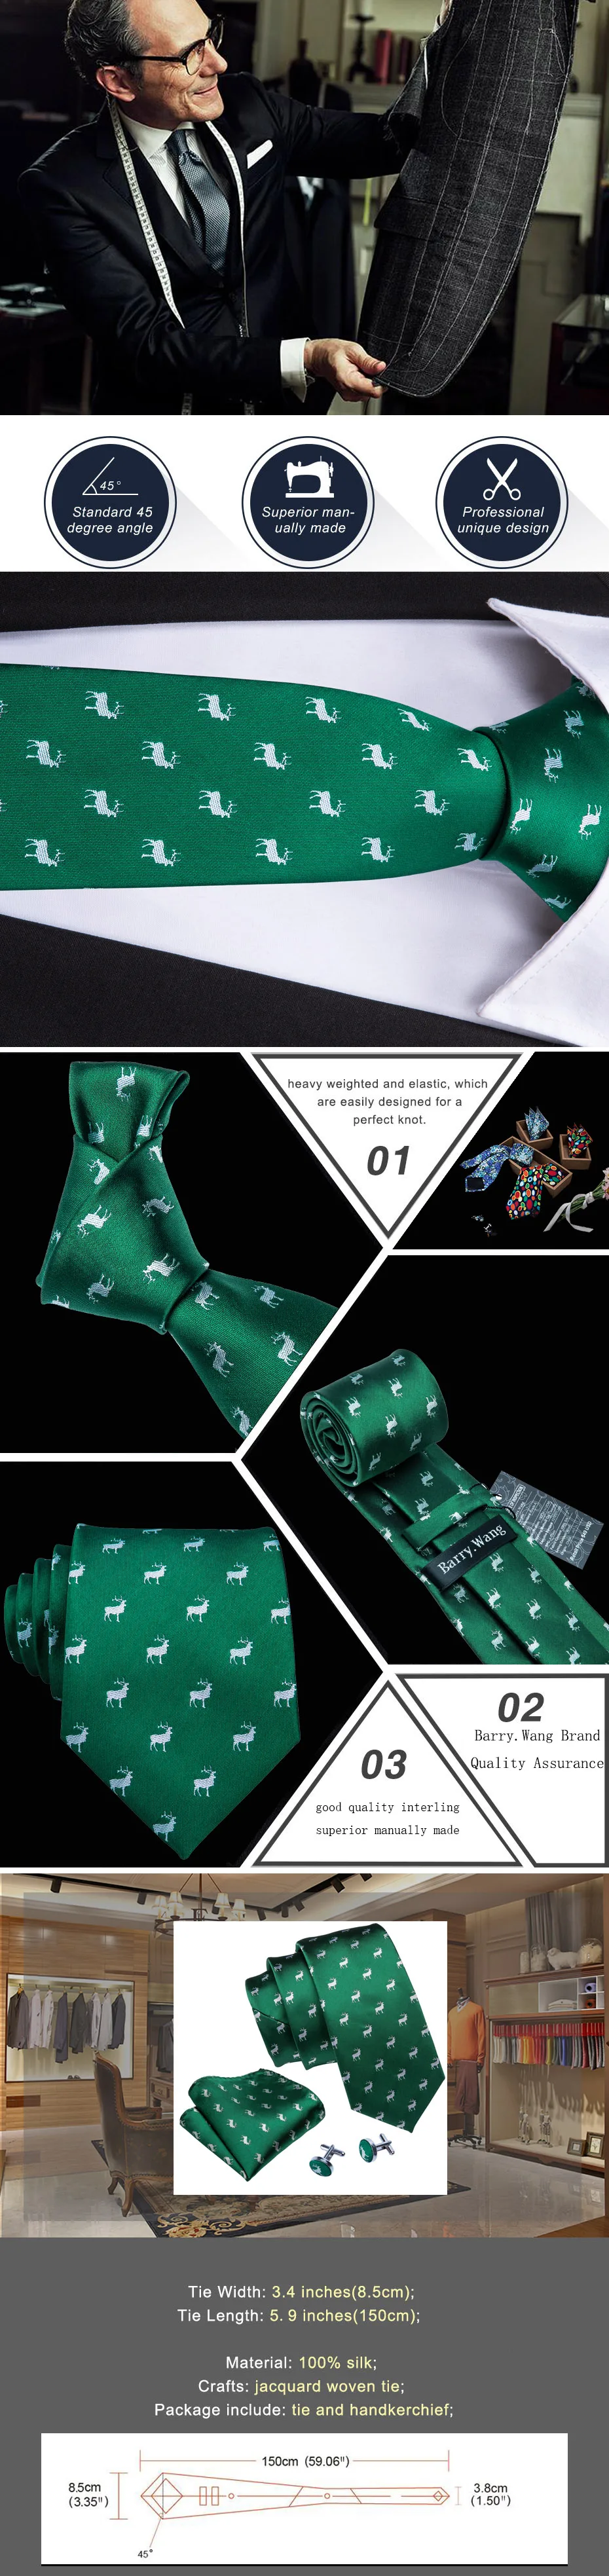 Barry. Wang Новое поступление мужские галстуки с рисунком оленя зеленые мужские свадебные галстуки 3,35 ''Галстуки деловые шелковые галстуки для мужчин